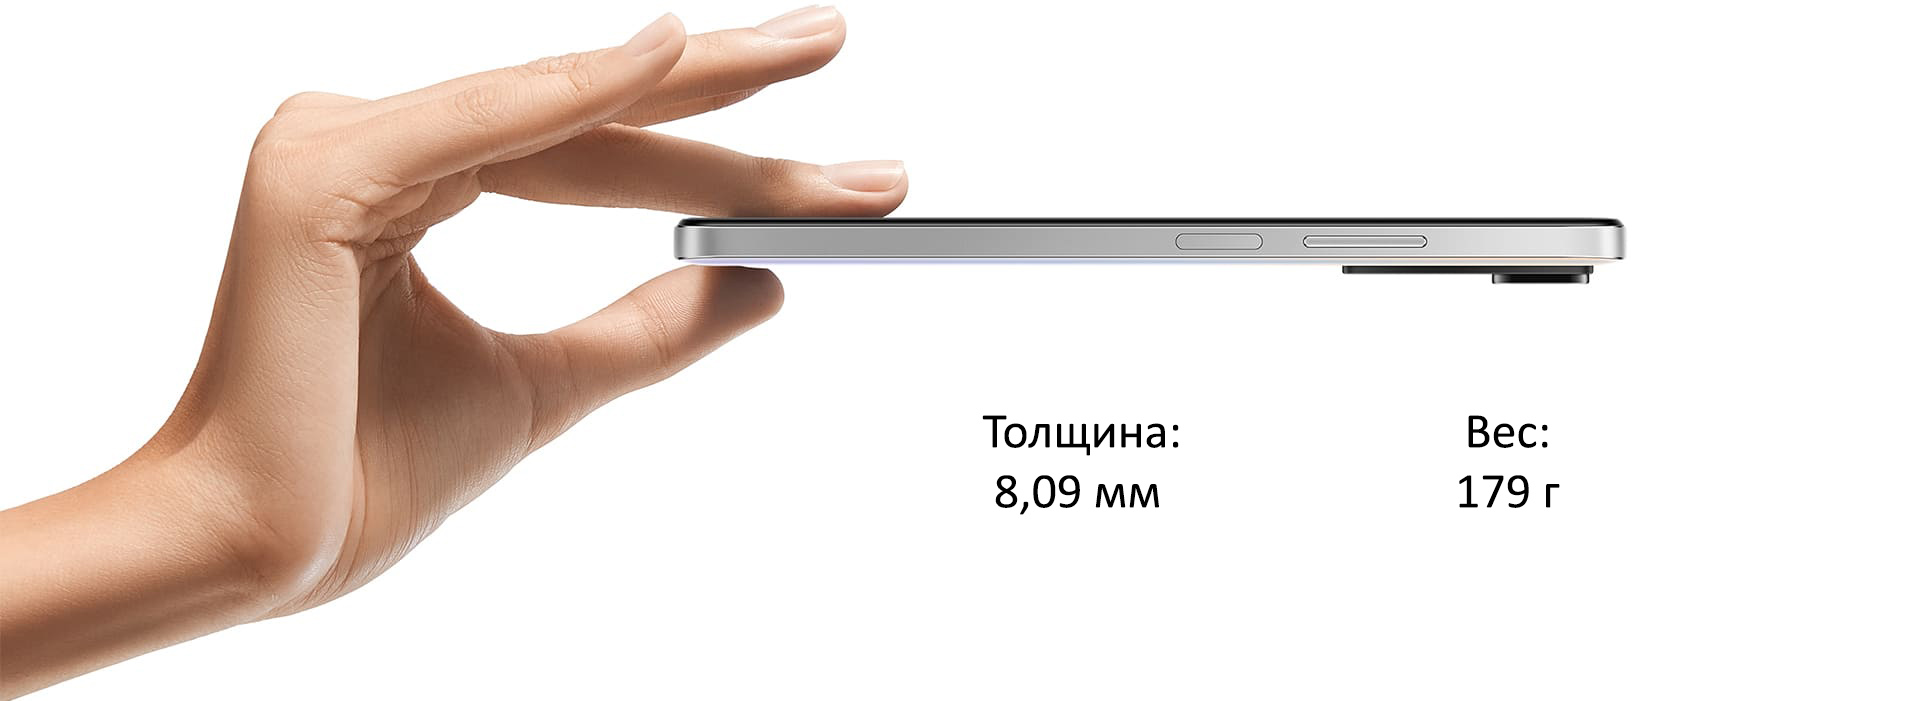 Xiaomi Redmi Note 11S 6+128GB (белый / Pearl White)